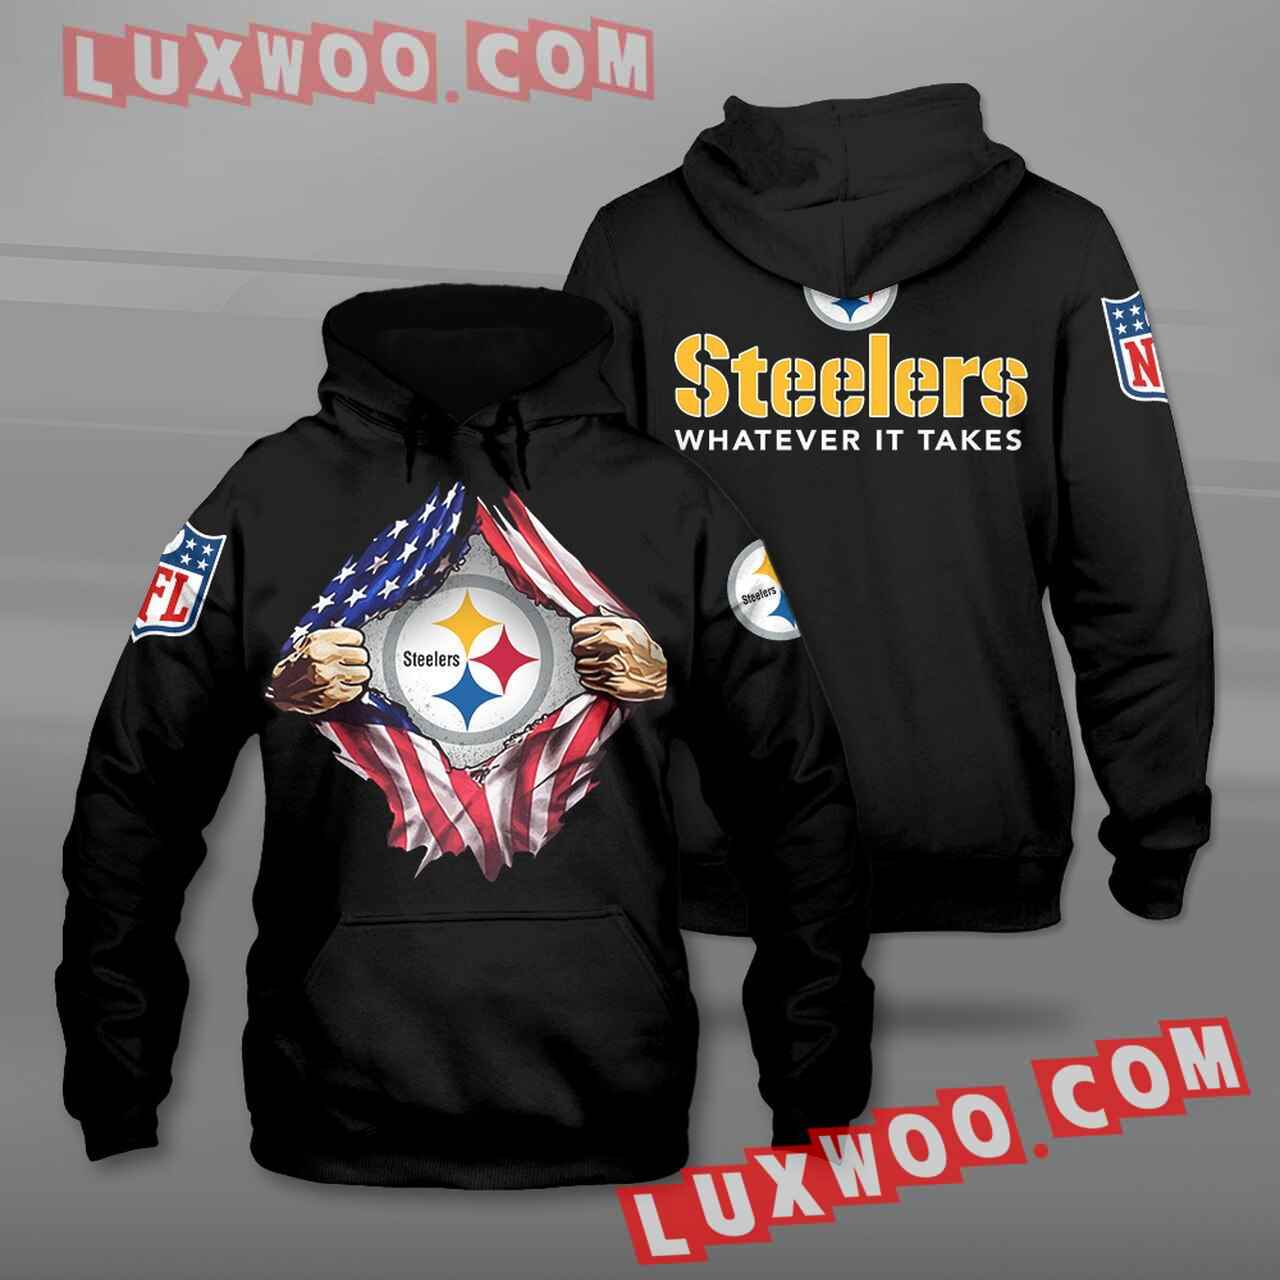 Nfl Pittsburgh Steelers Hoodies Custom All Over Print 3d Pullover Hoodie V36